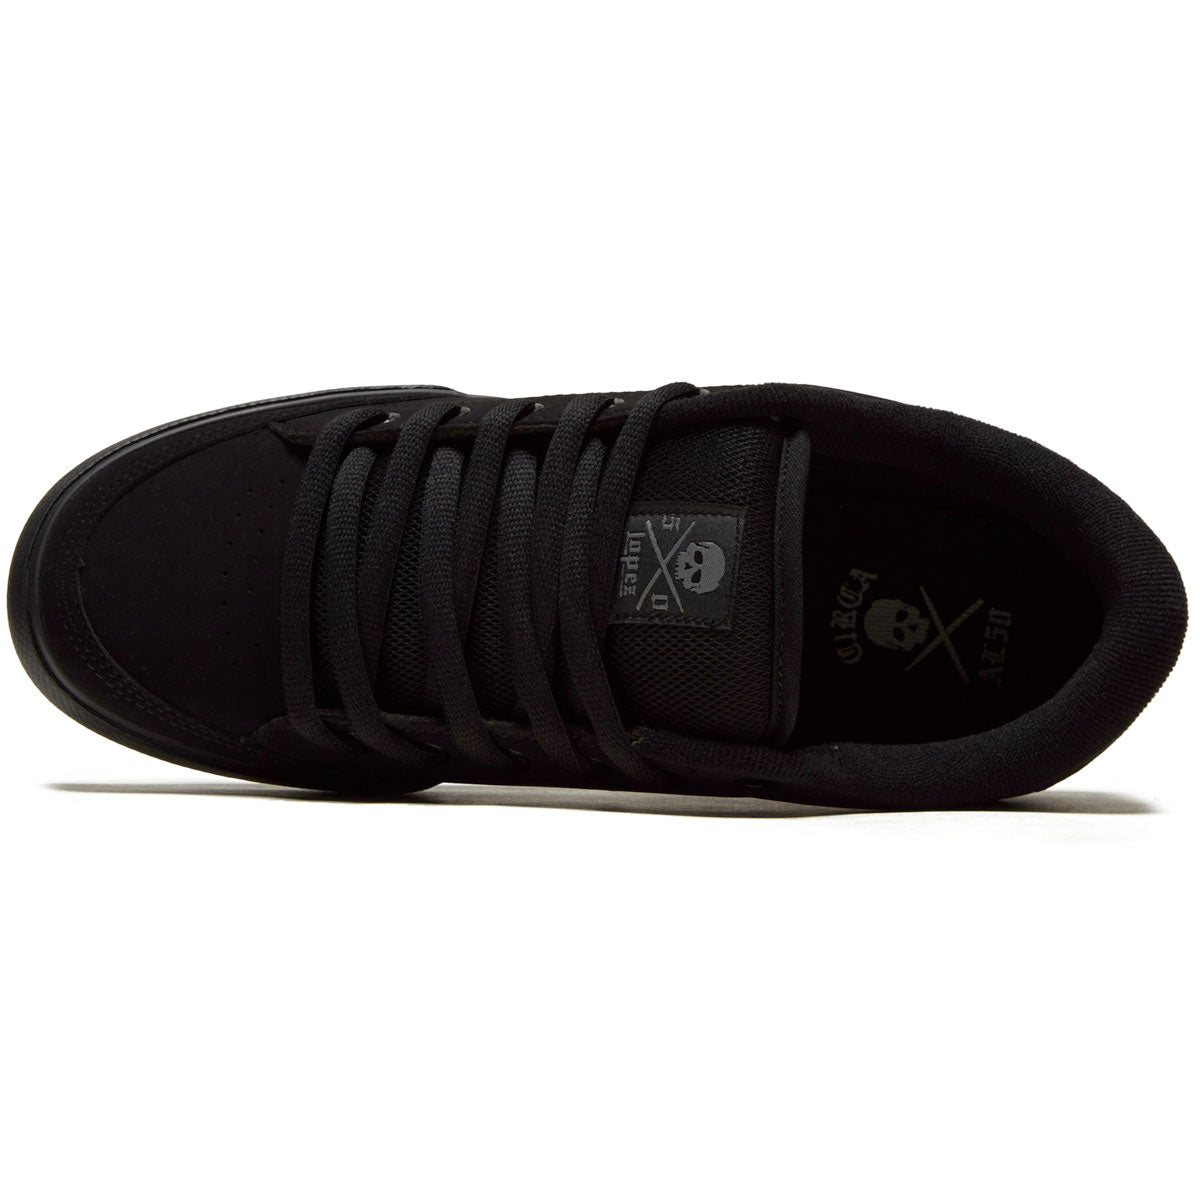 C1rca AL50 Shoes - Black/Black/Synthetic image 3